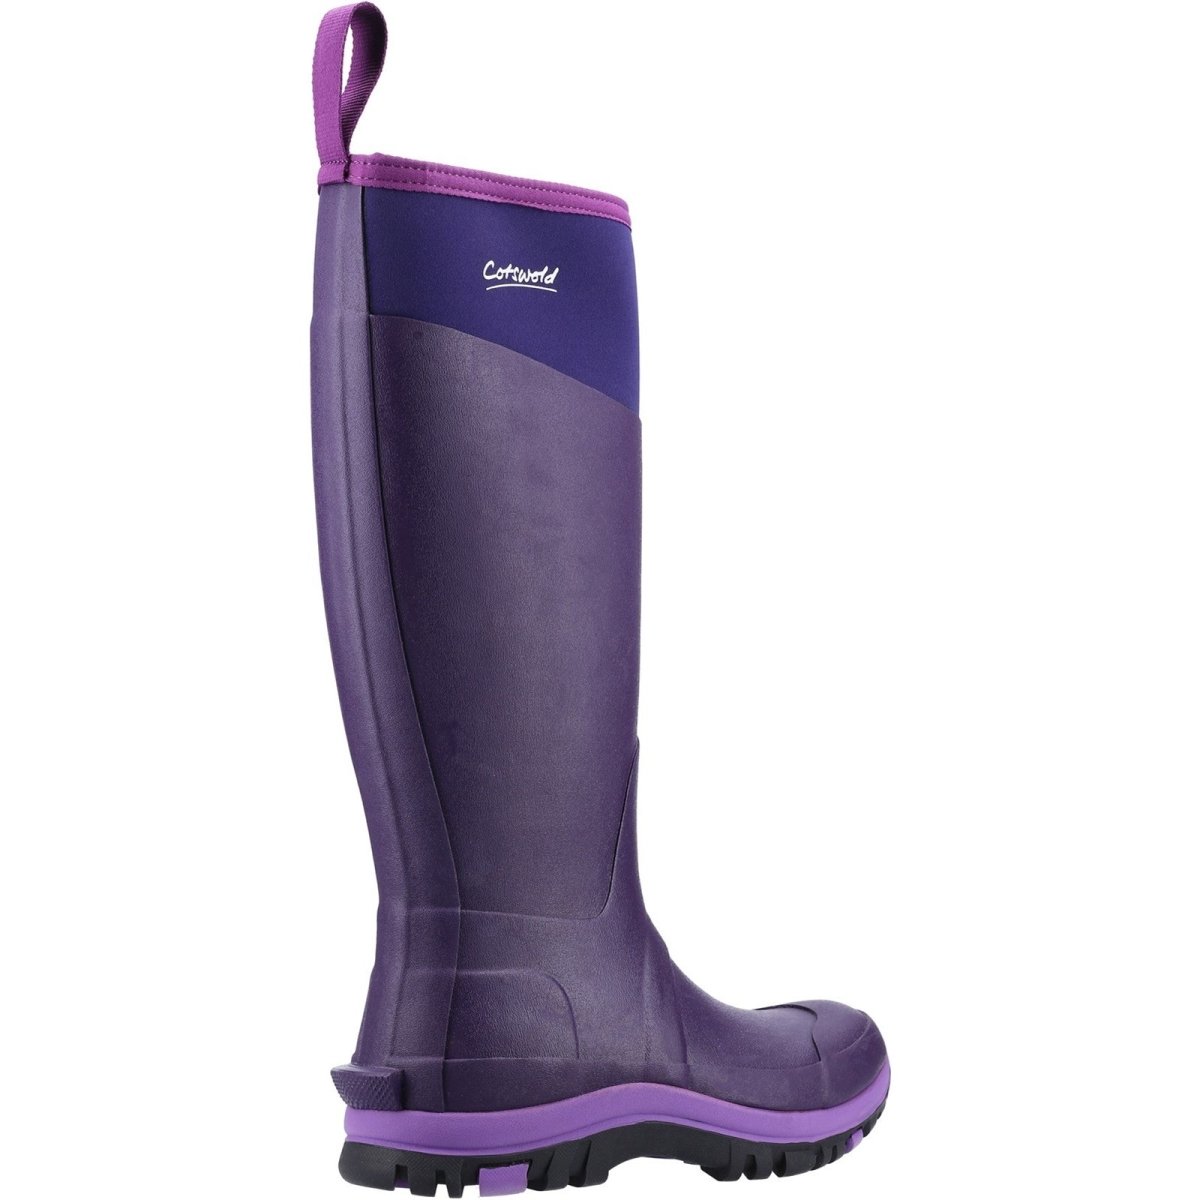 Cotswold Wenworth Waterproof Ladies Wellington Boots - Shoe Store Direct